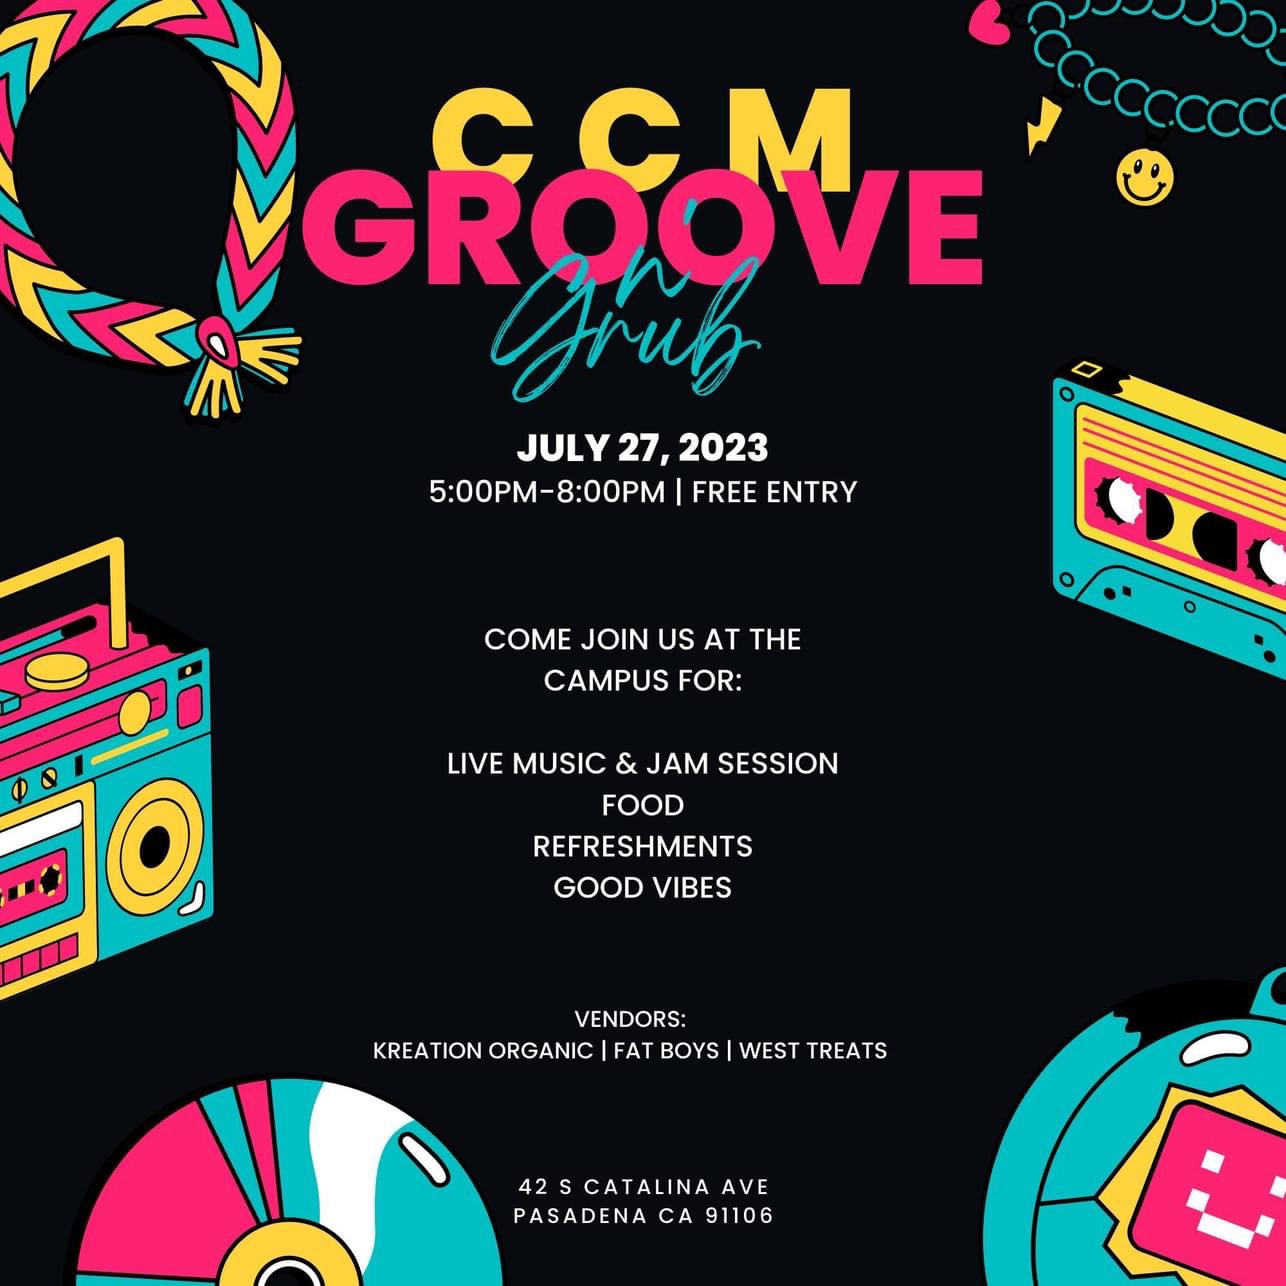 【教育】CCM Groove n’ Grove 美國加州音樂學院首次音樂共享盛會